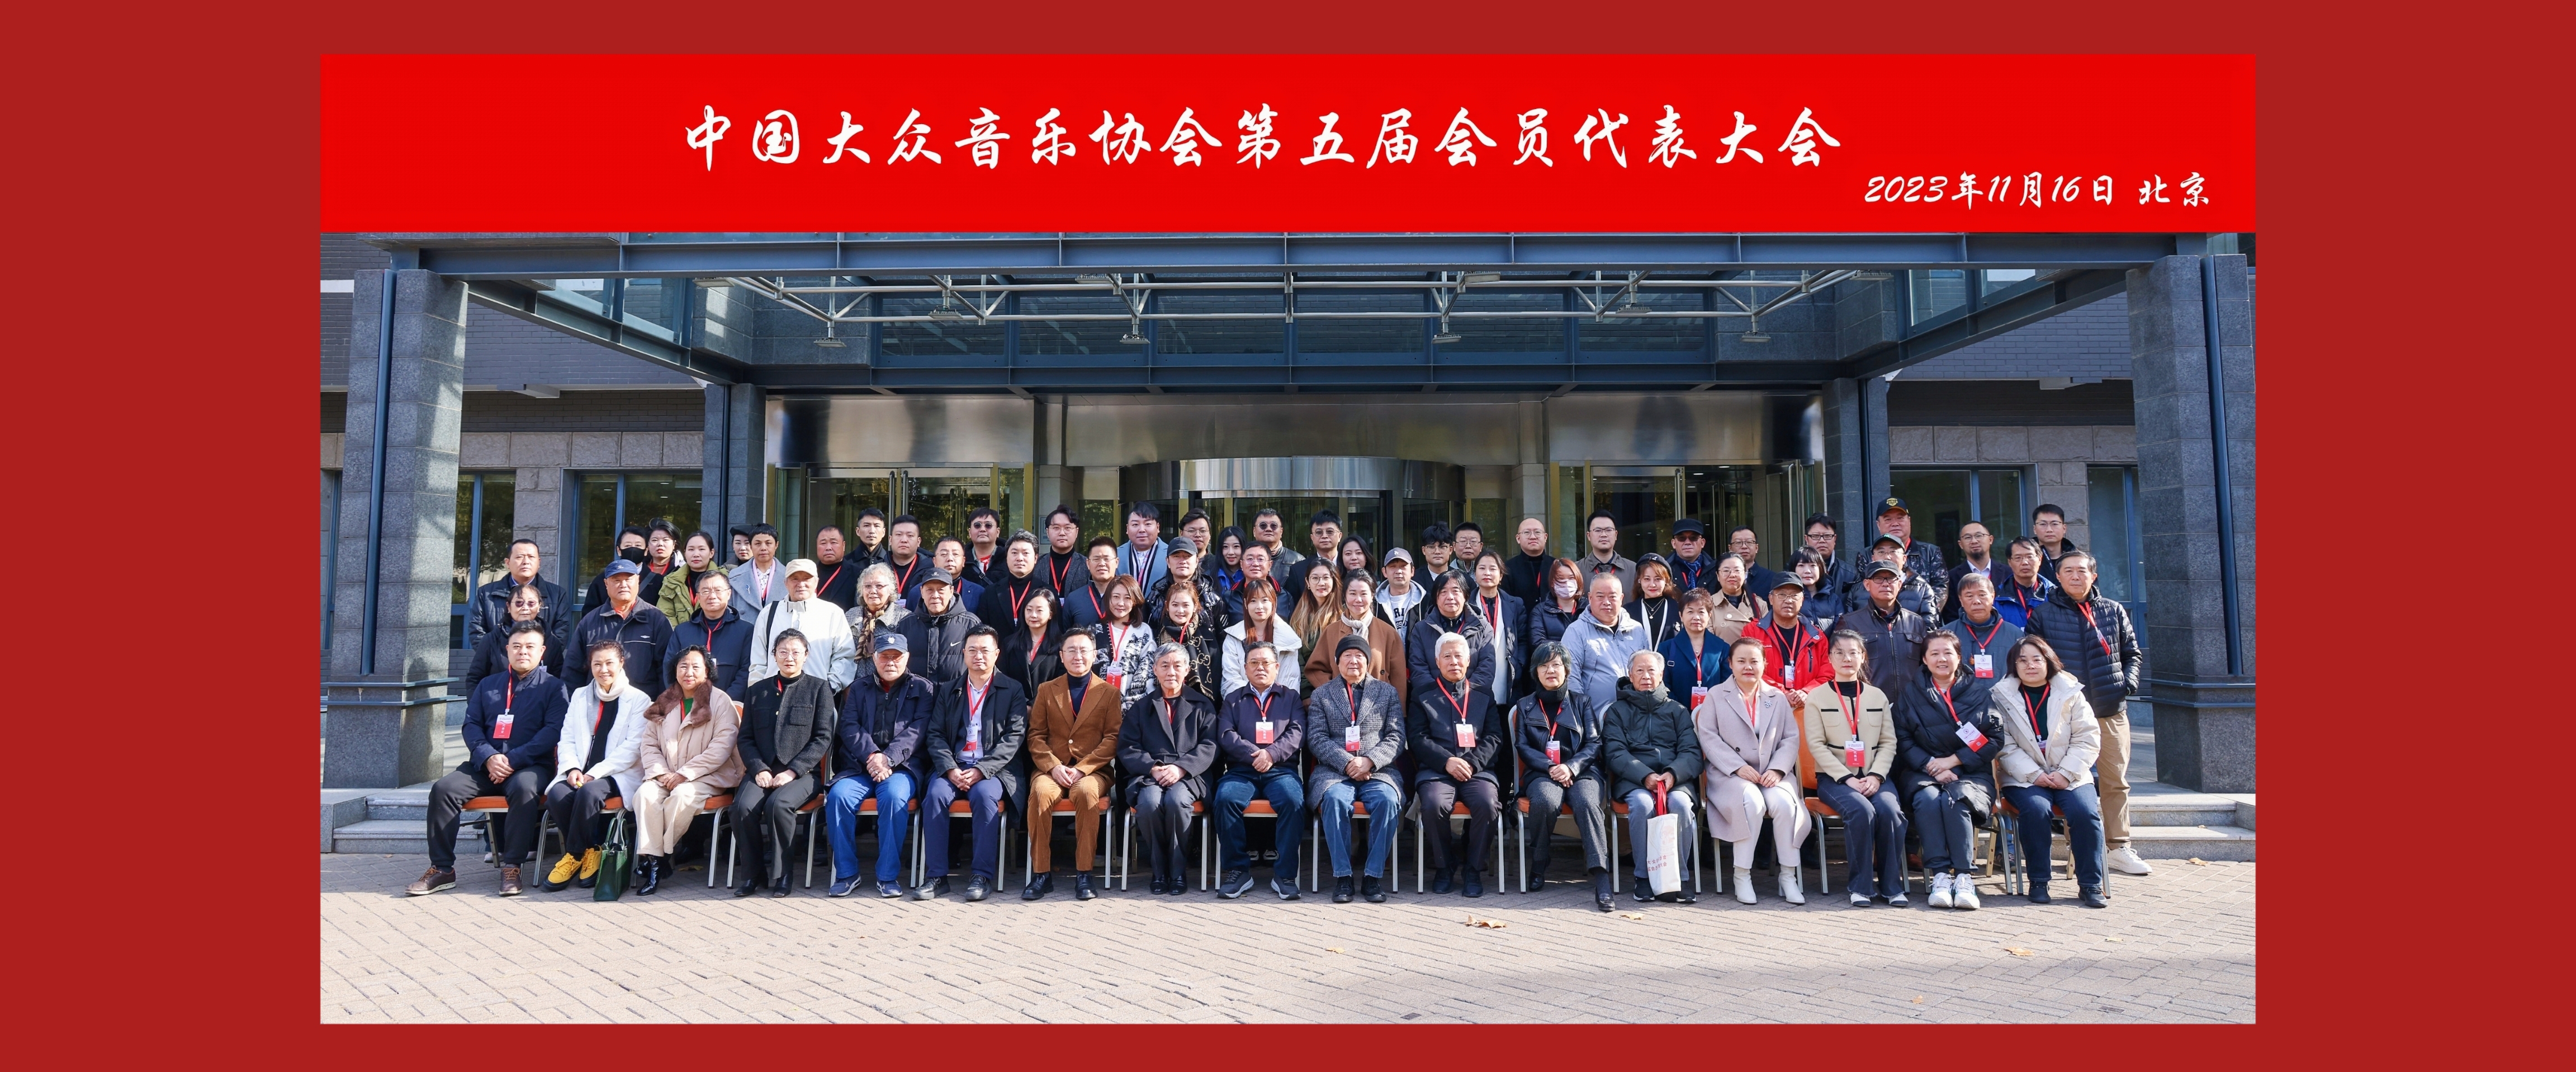 中国大众音乐协会第五届会员代表大会在京召开